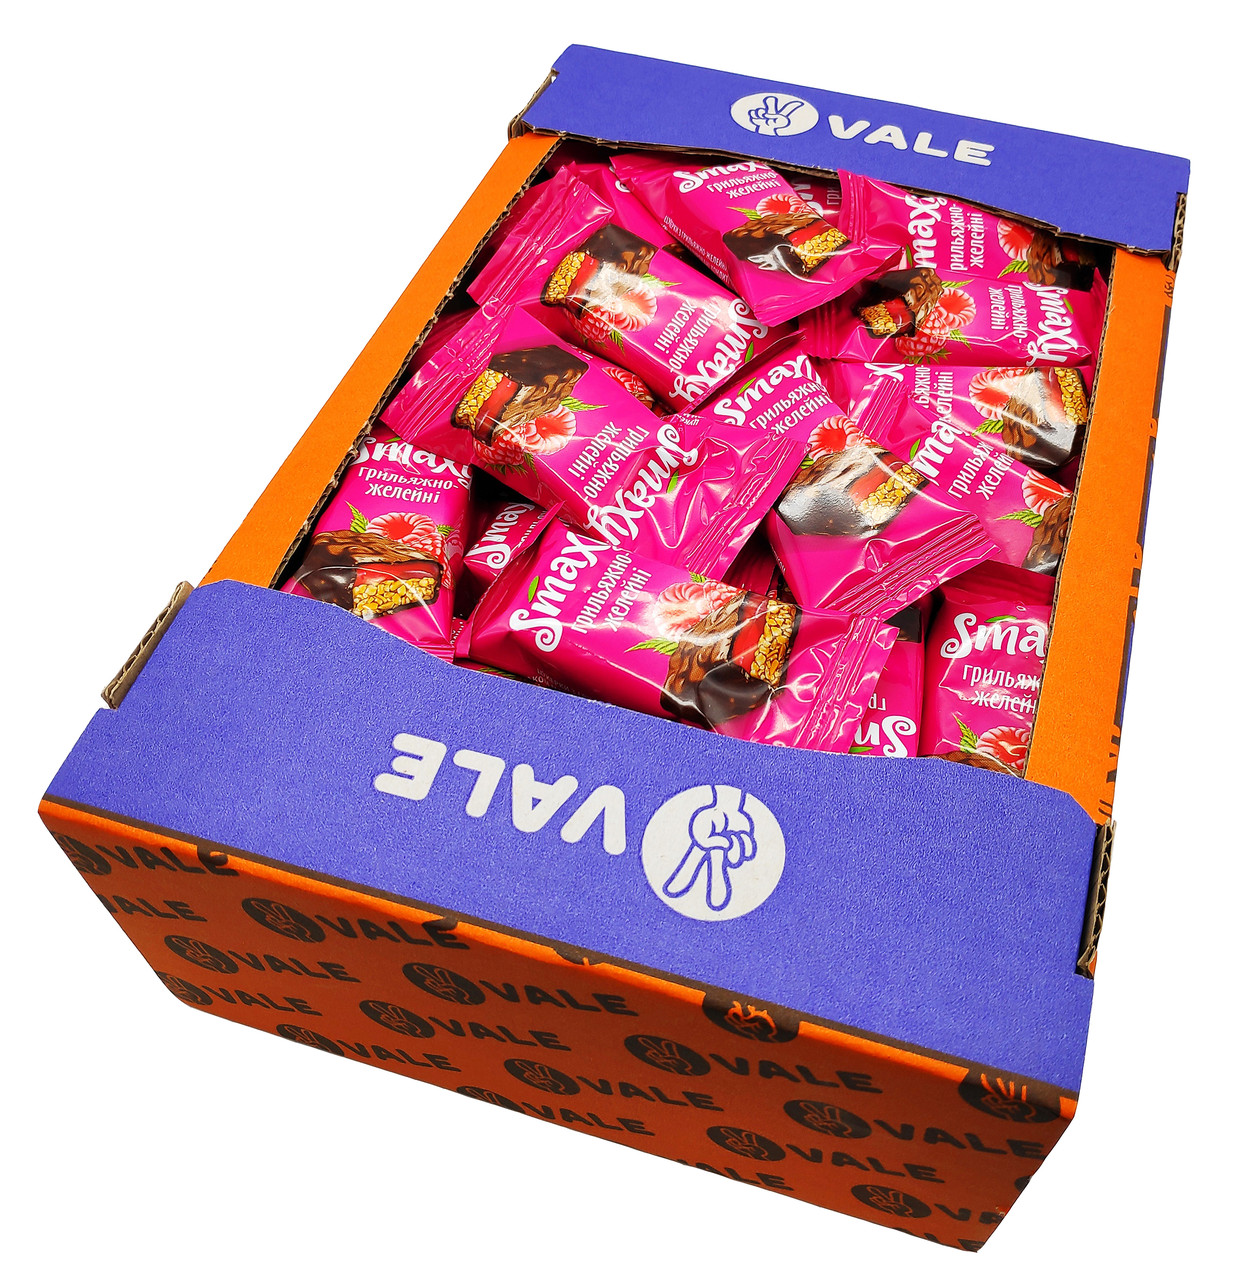 Упаковка фруктовых мини-батончиков Vale Smaxy Грильяж и малиновое желе